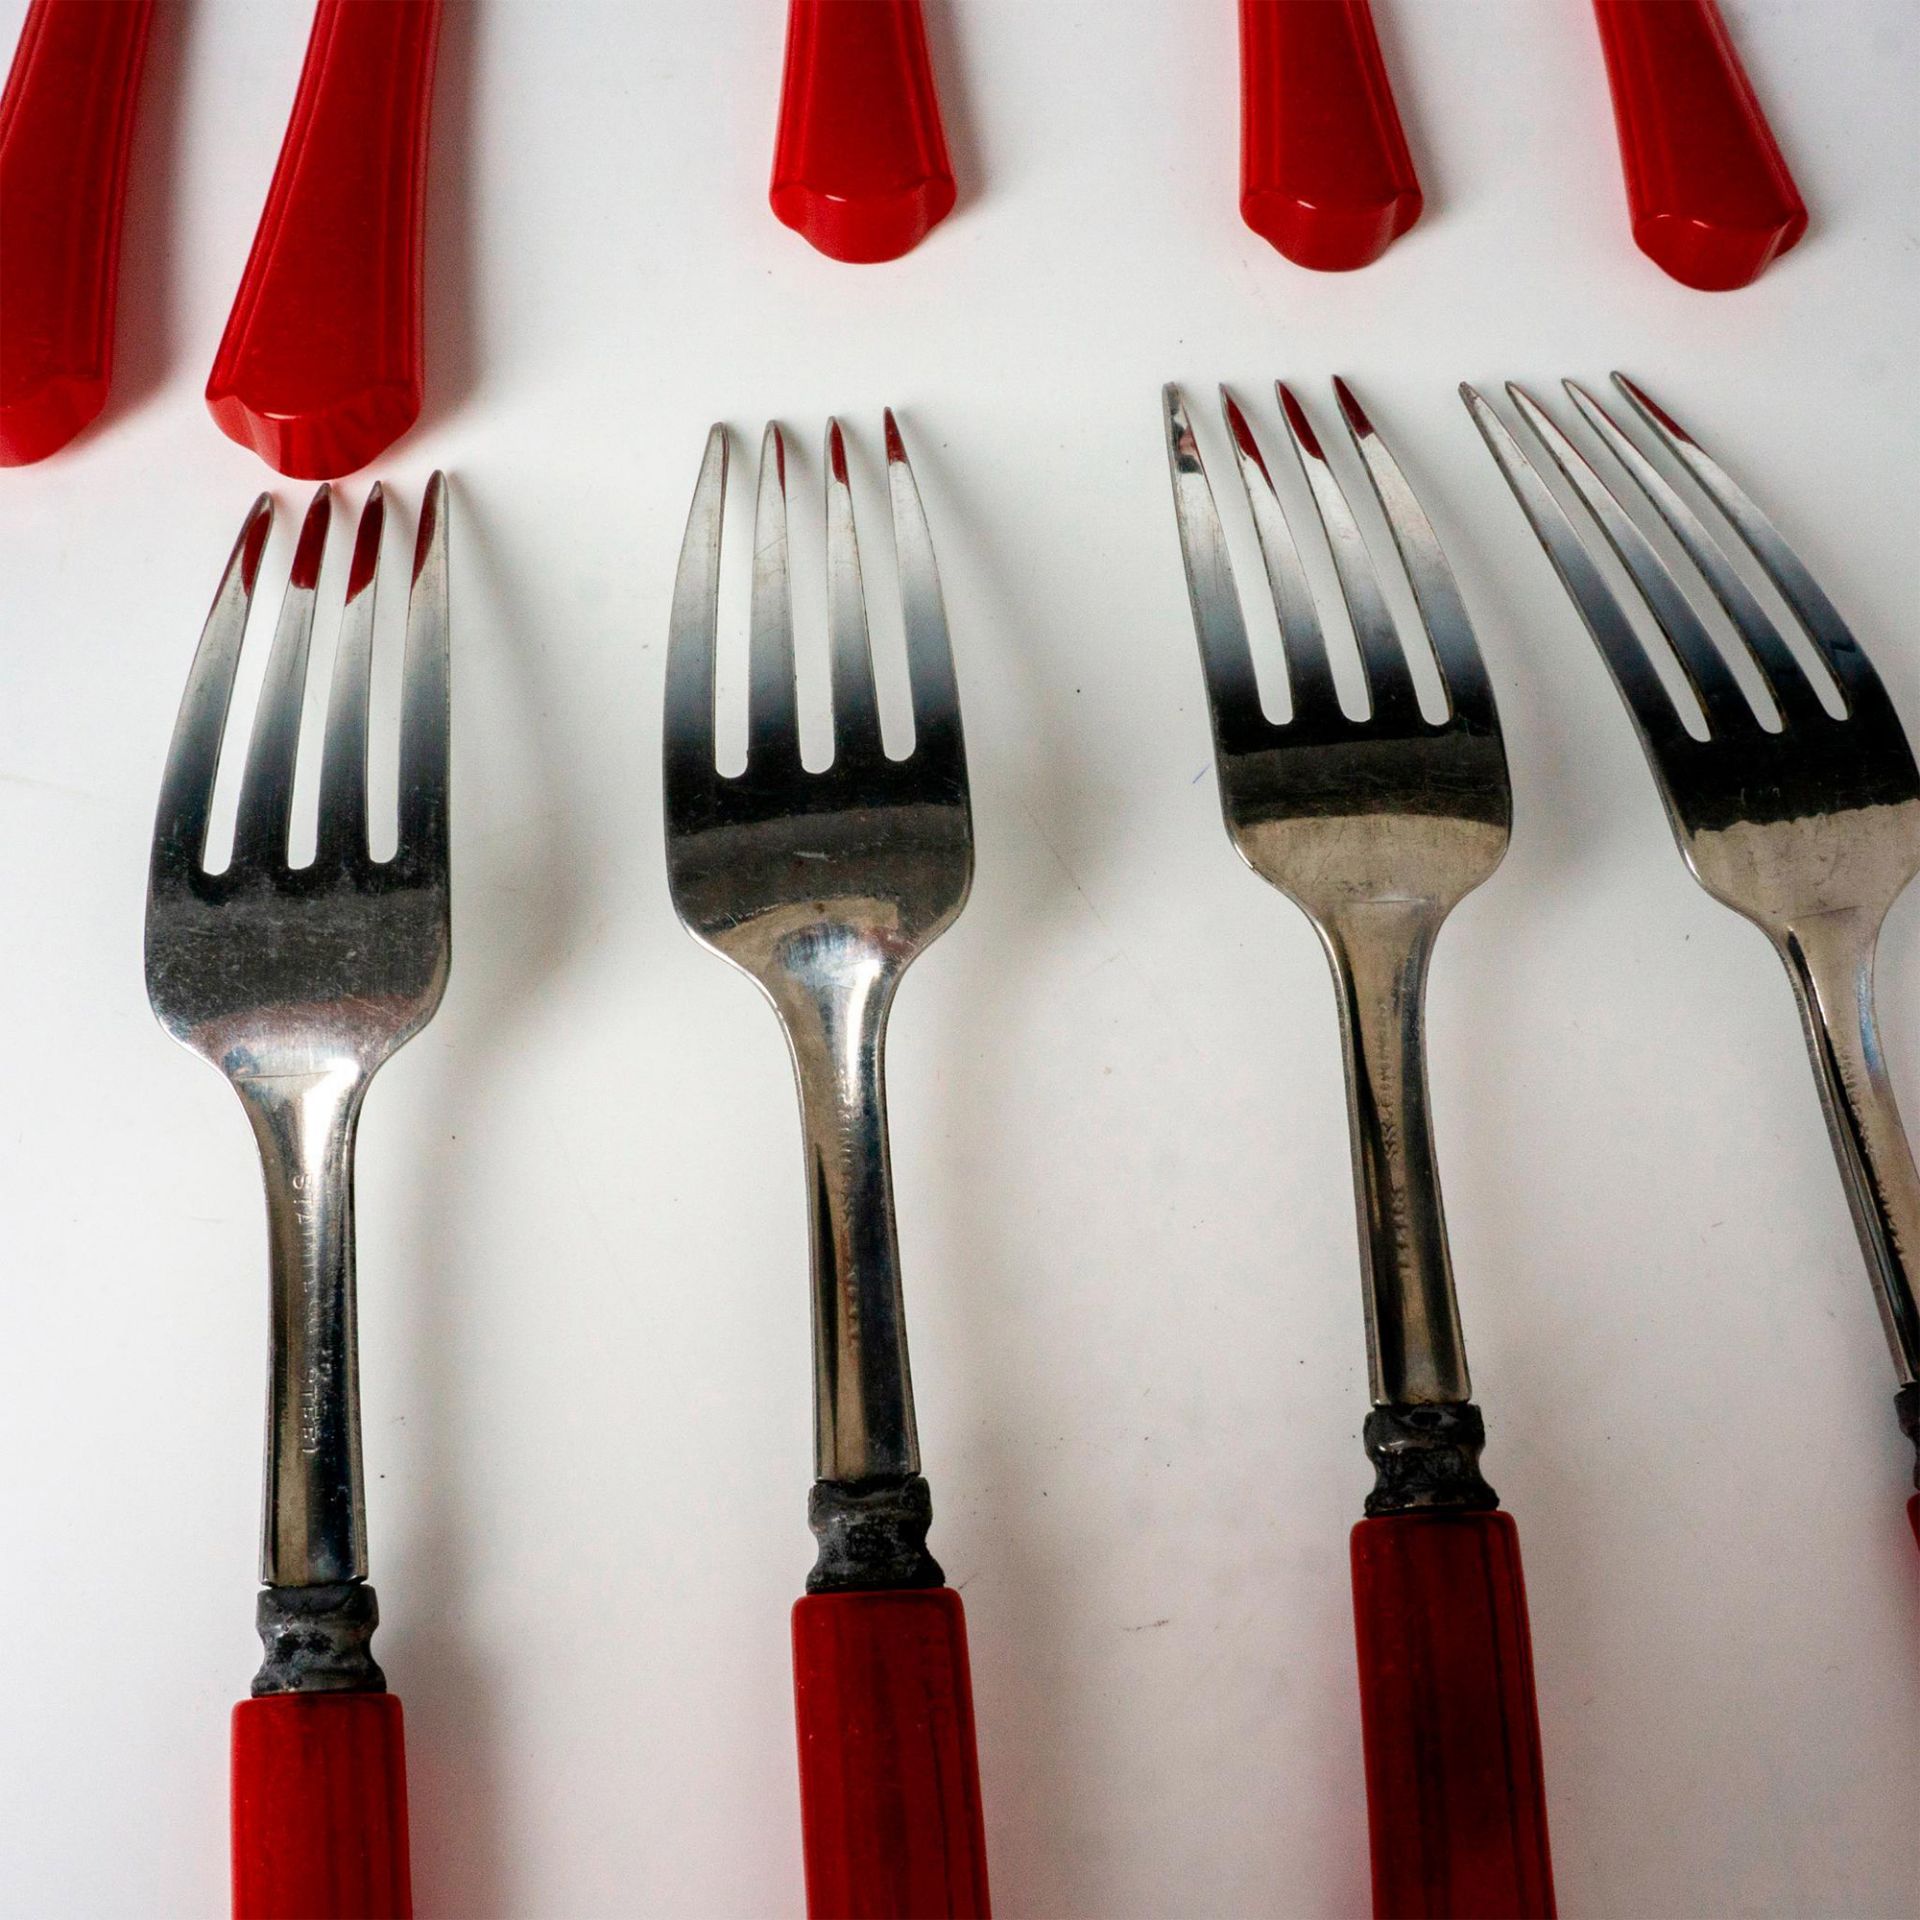 12pc Vintage Red Bakelite Silverware, Forks, Knives, Spoons - Image 4 of 5